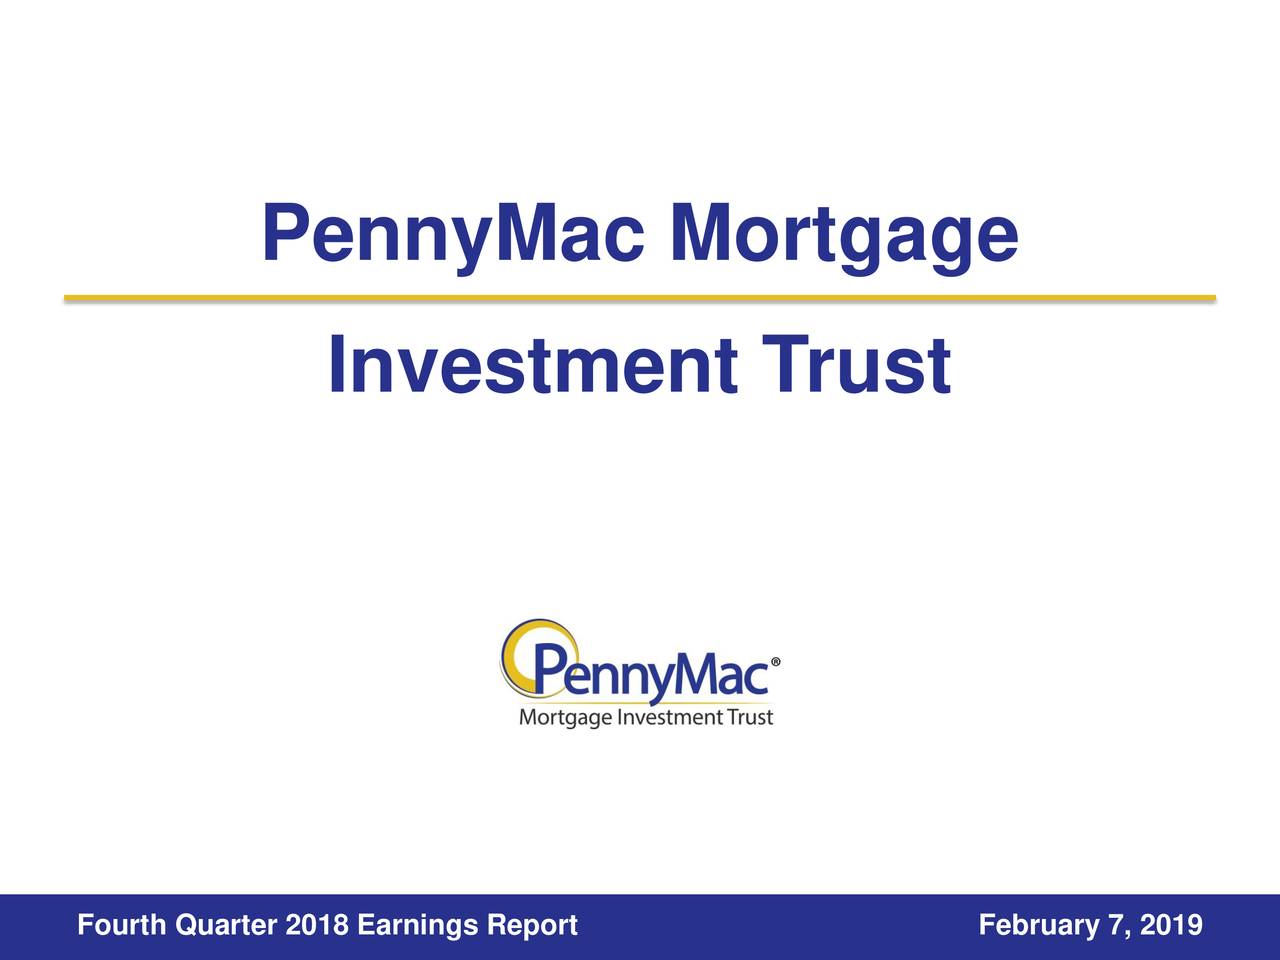 PennyMac Mortgage